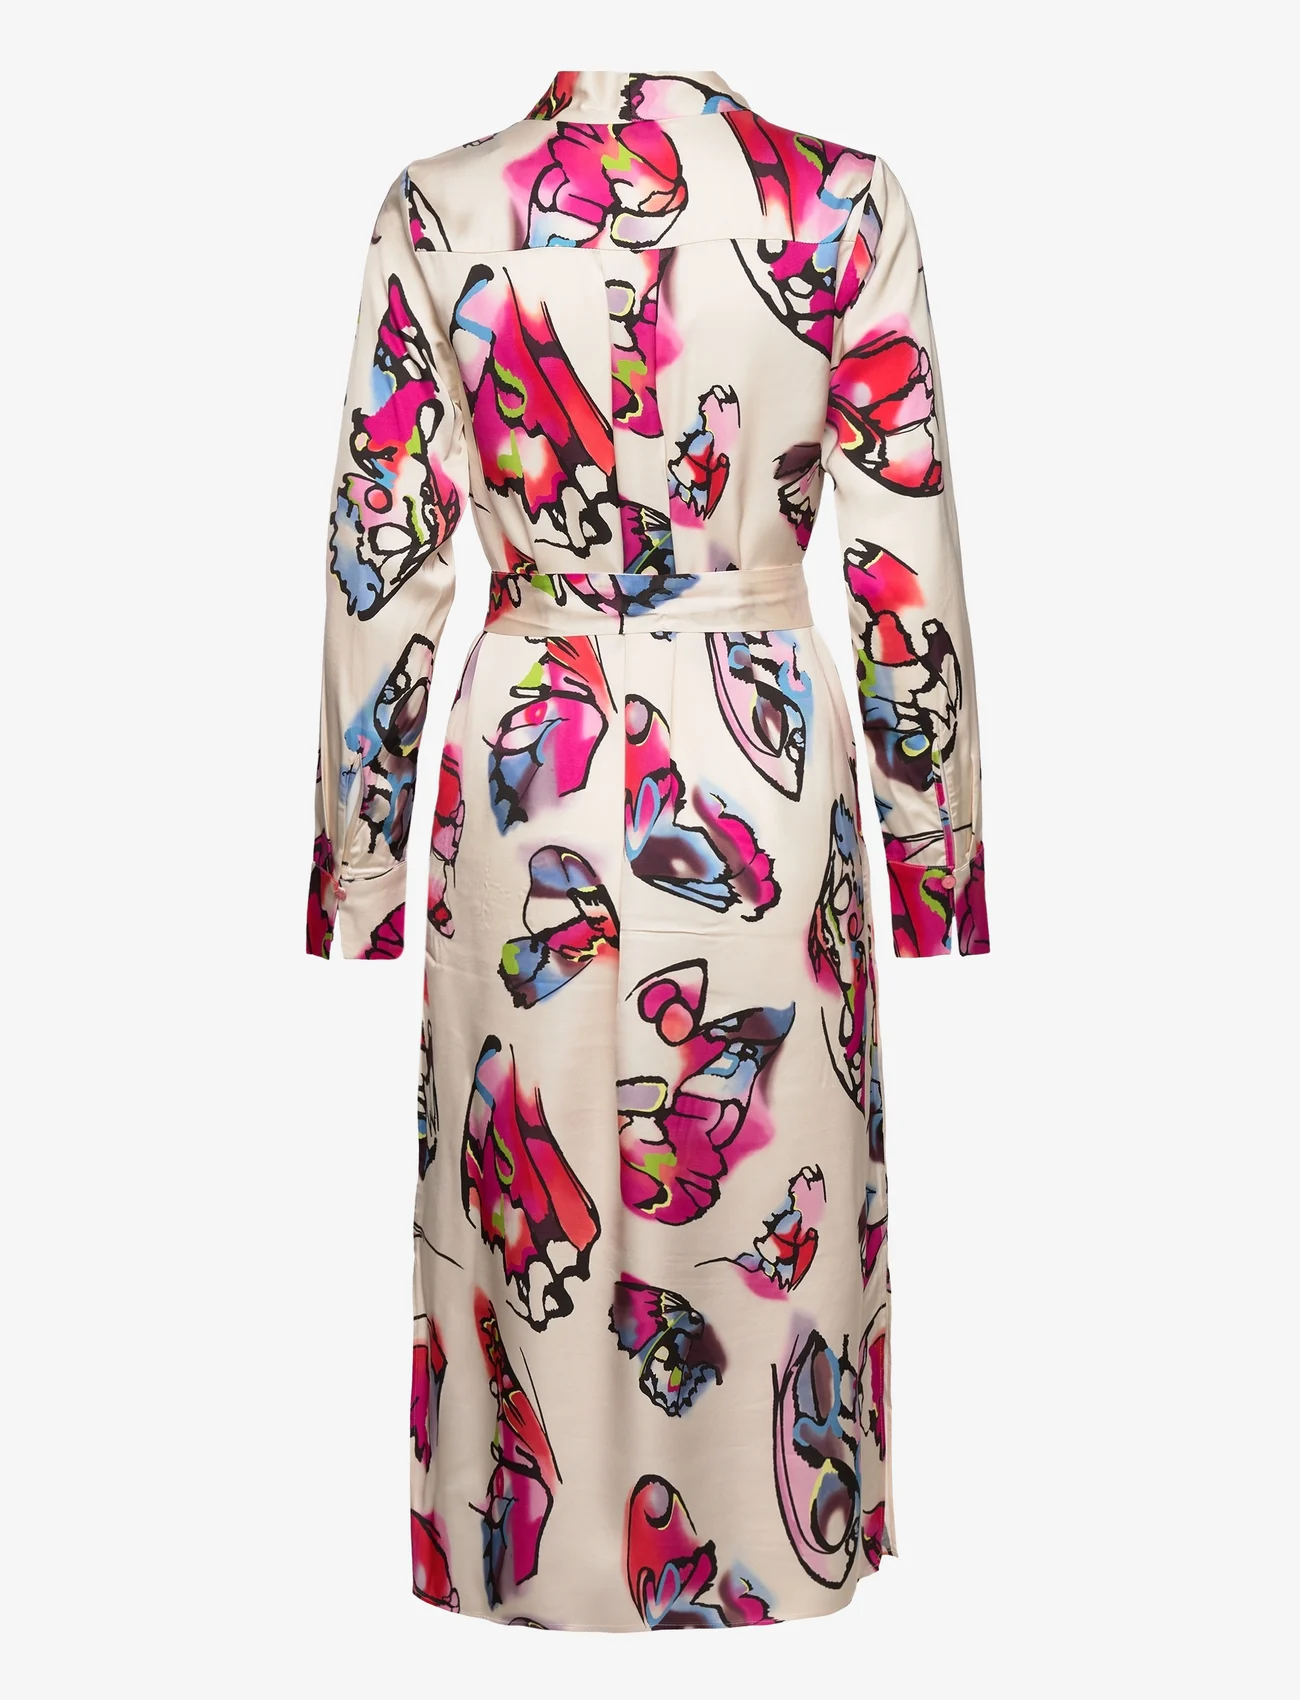 Coster Copenhagen - Dress in butterfly print - wrap dresses - butterfly print - 1